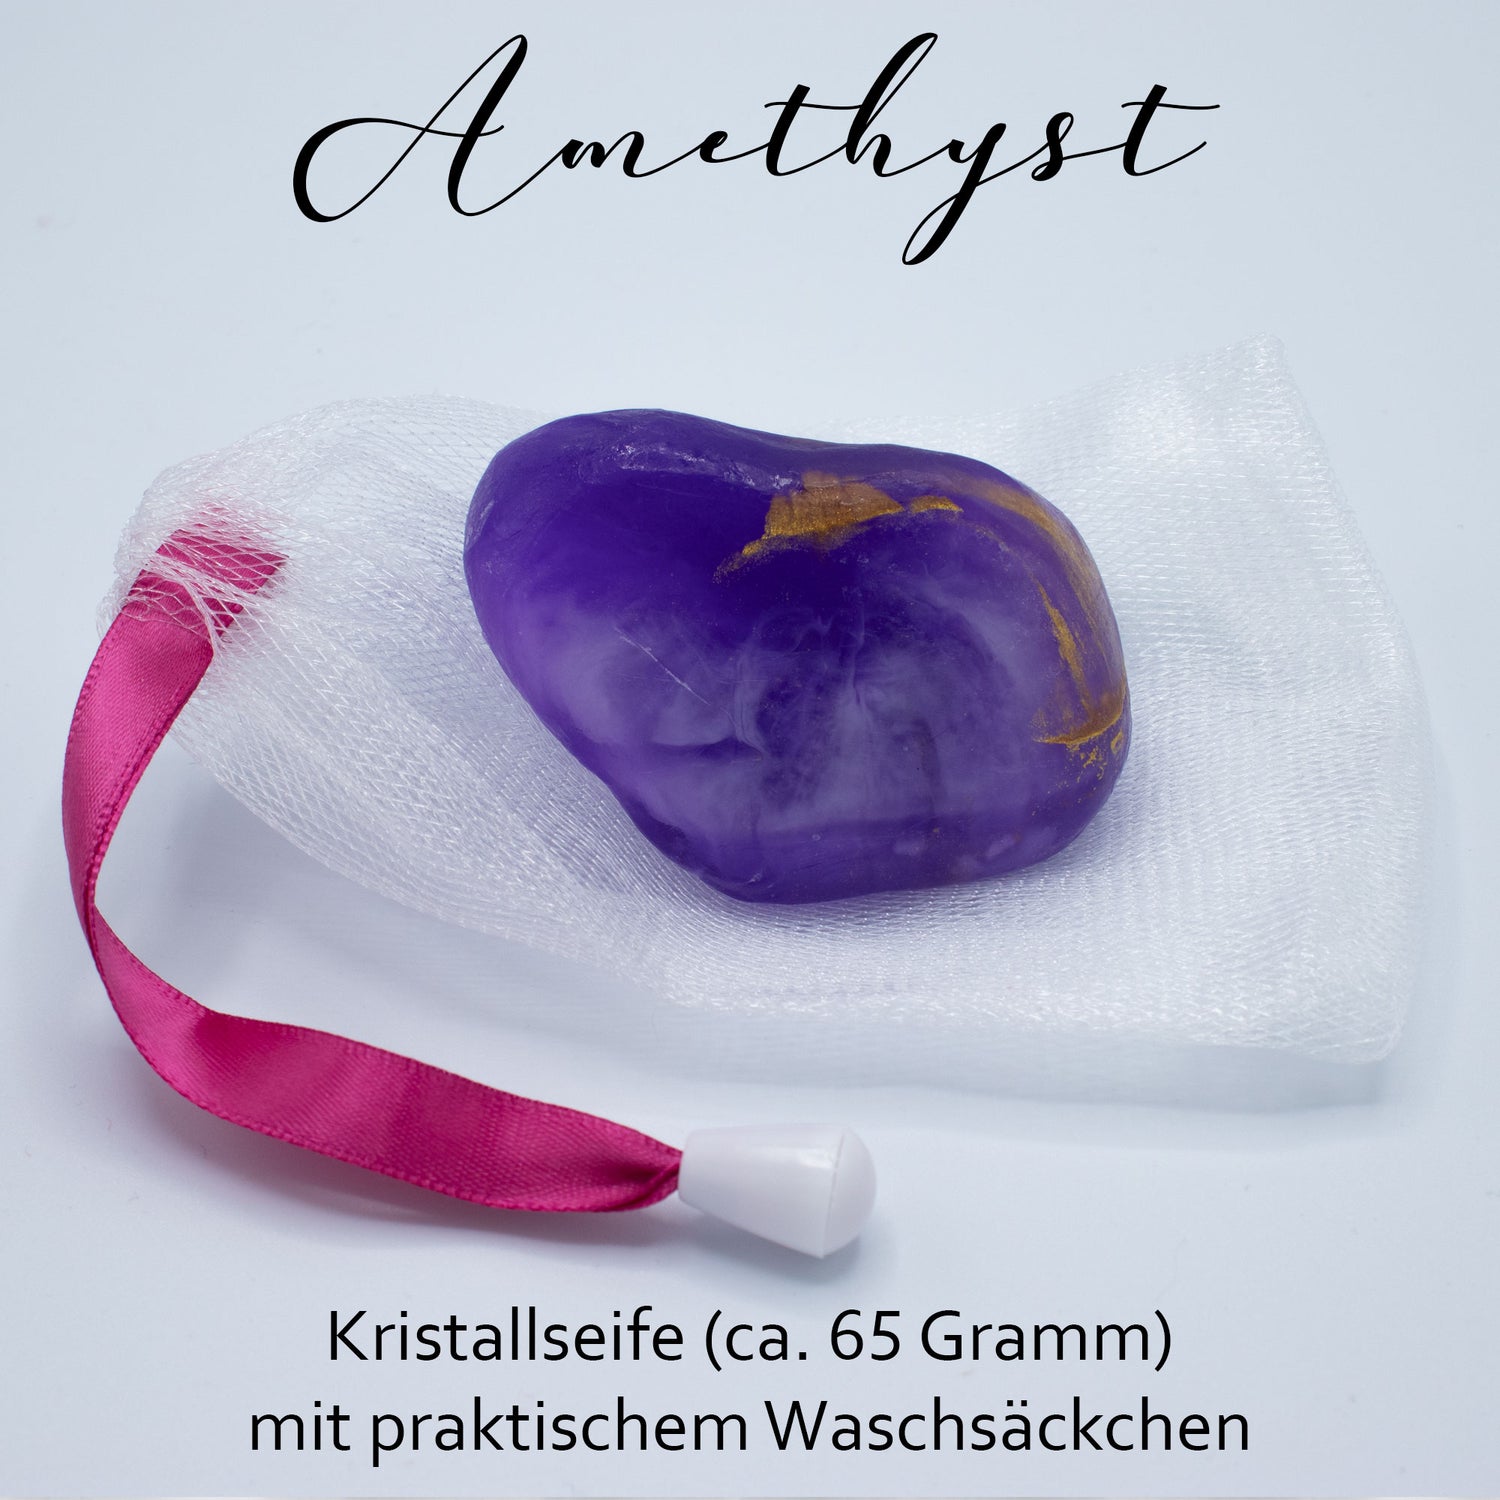 Diamantseife · Kristallseife · Amethyst mit dem Duft nach Lavendelhonig · Handmade mit ätherischen Ölen - AMADO-SelfCare